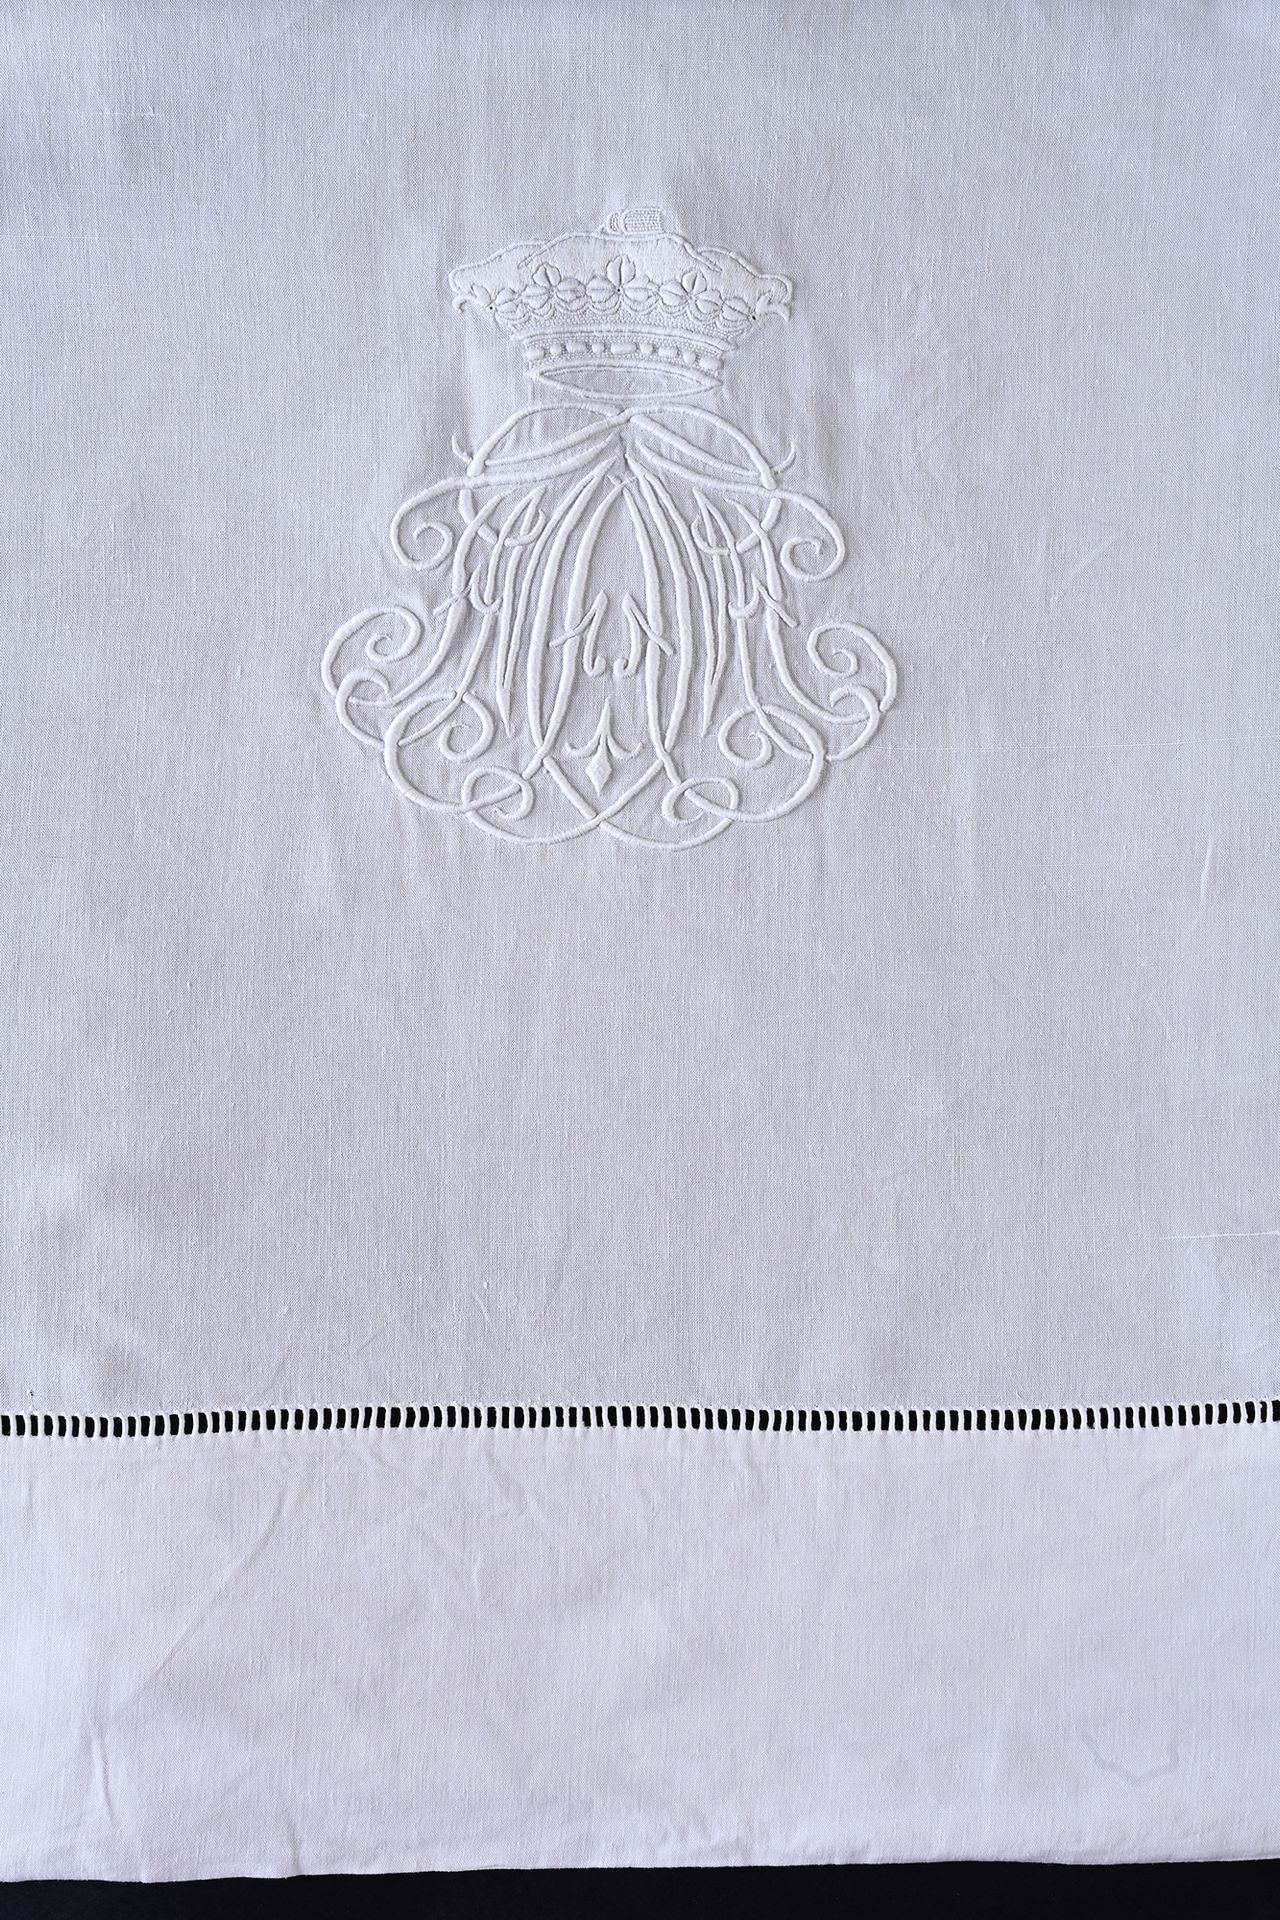 Null 两张绣有法国公爵和贵族皇冠的大床单，19世纪下半叶。
床单的模型是一种美丽的亚麻织物，织工精细，大而优雅的人物MA在法国公爵和贵族的王冠下，用白色和精&hellip;